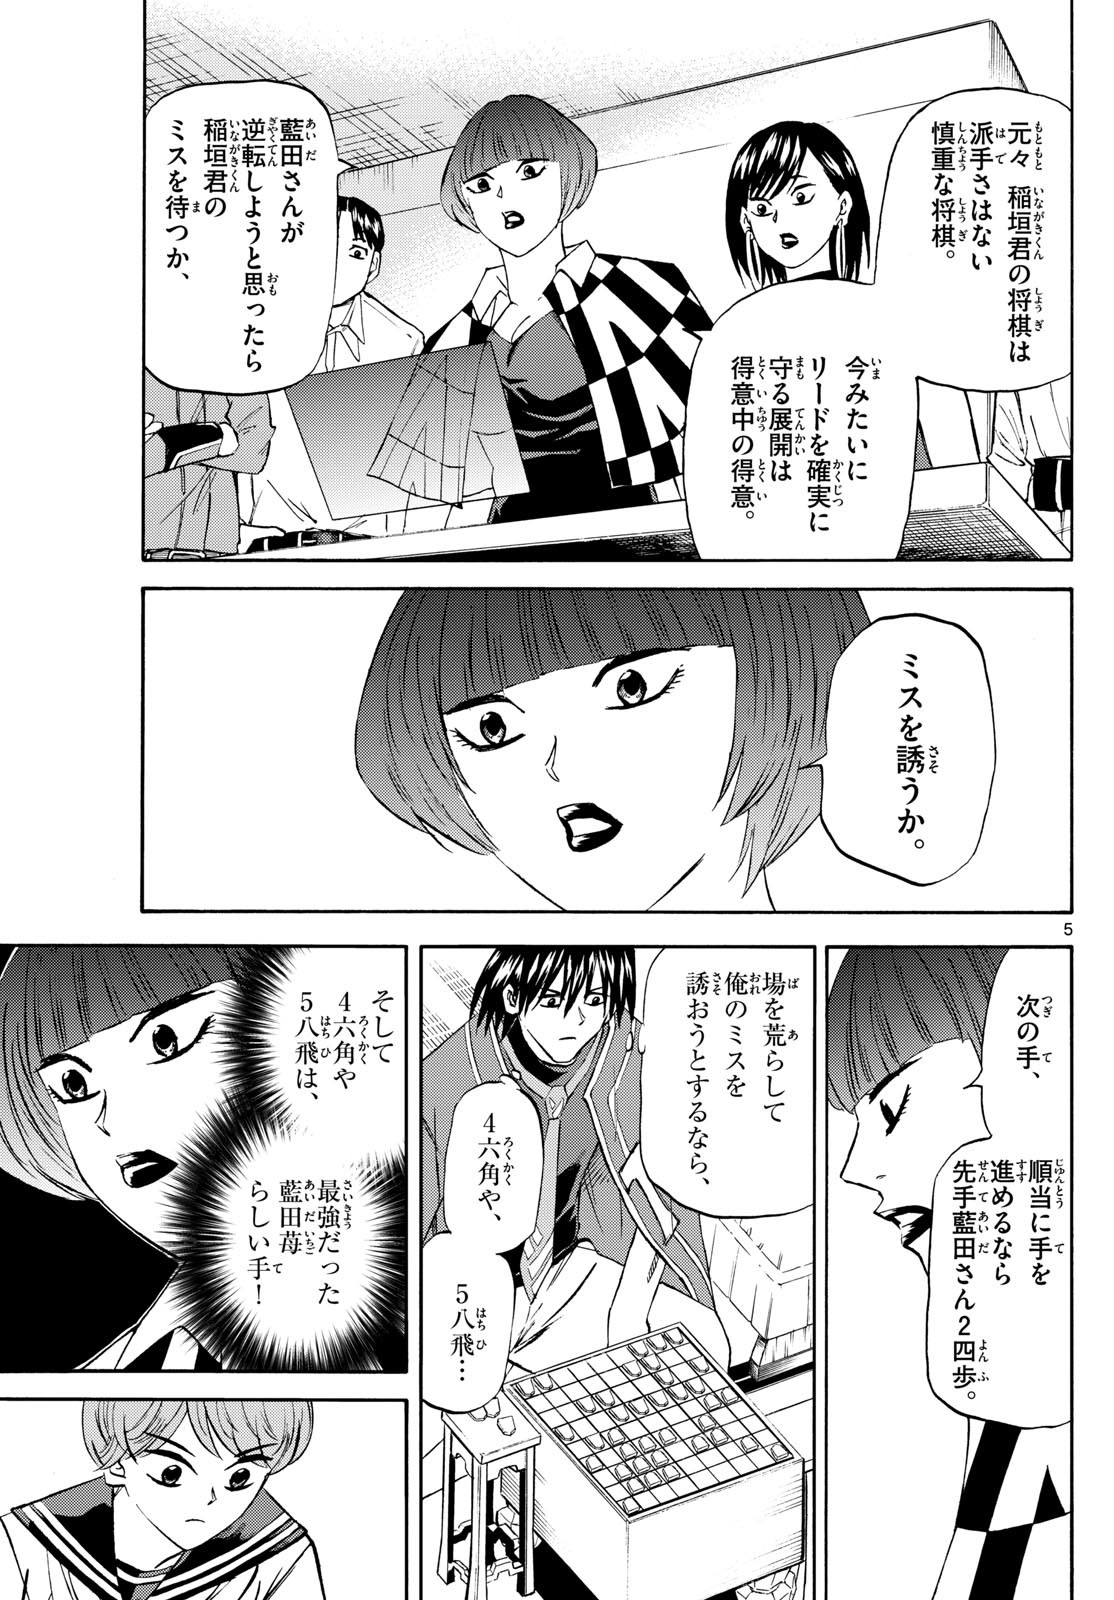 Ryu-to-Ichigo - Chapter 198 - Page 5